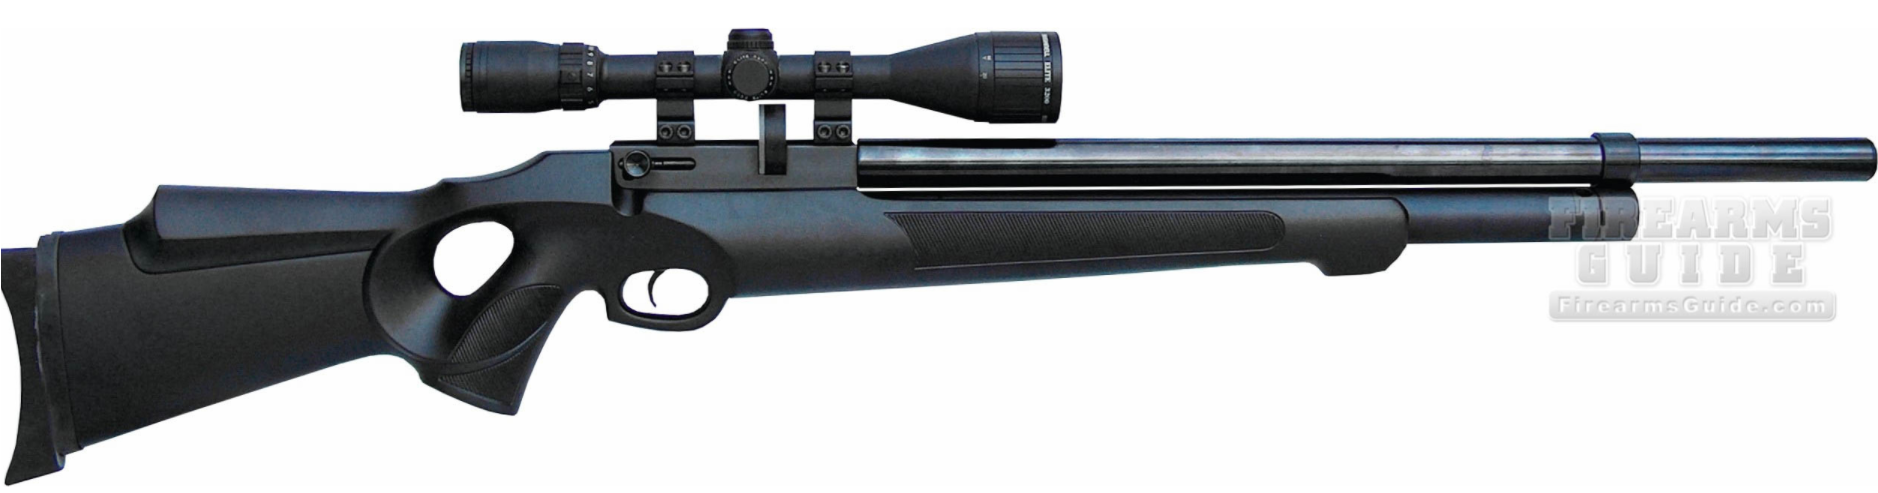 FX Airguns T12 Whisper